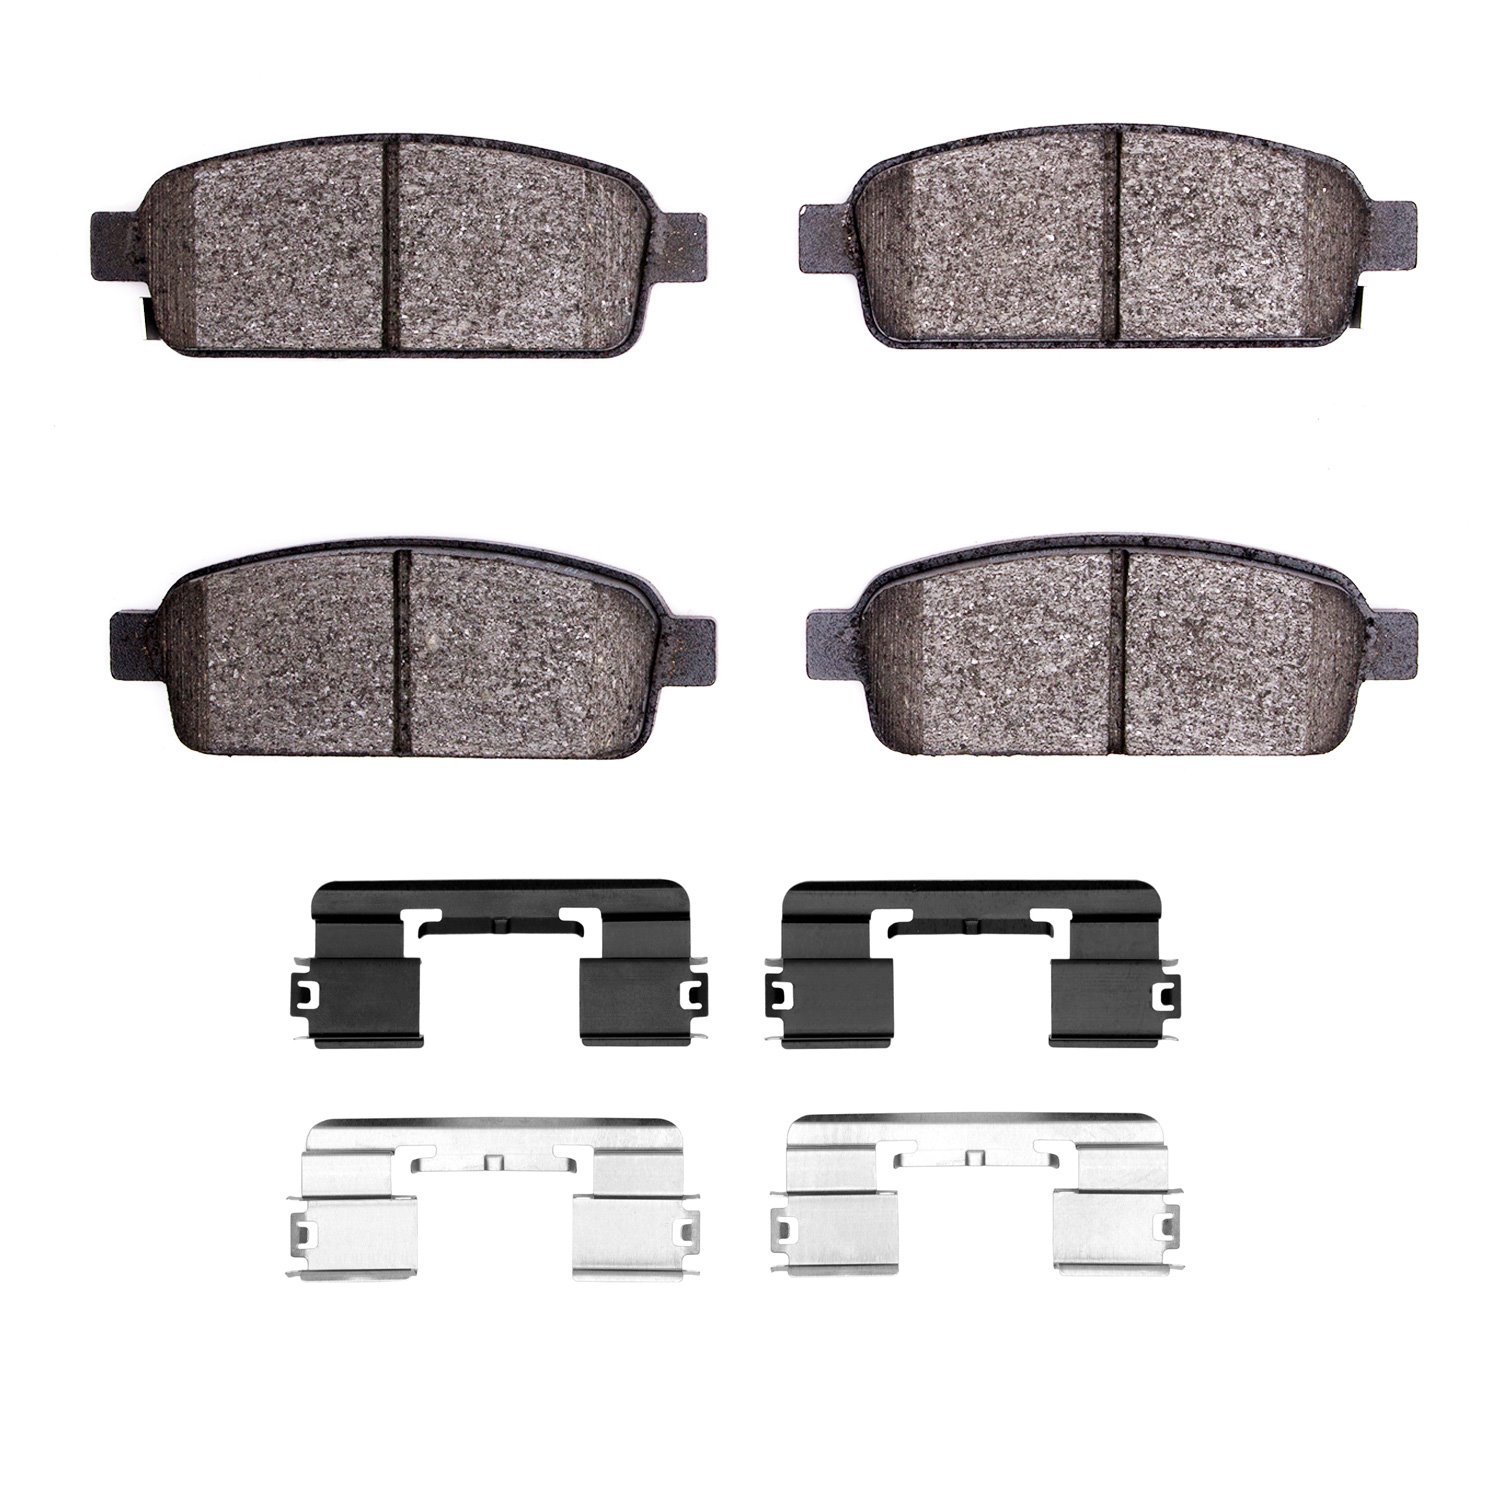 1310-1468-02 3000-Series Ceramic Brake Pads & Hardware Kit, 2016-2016 GM, Position: Rear